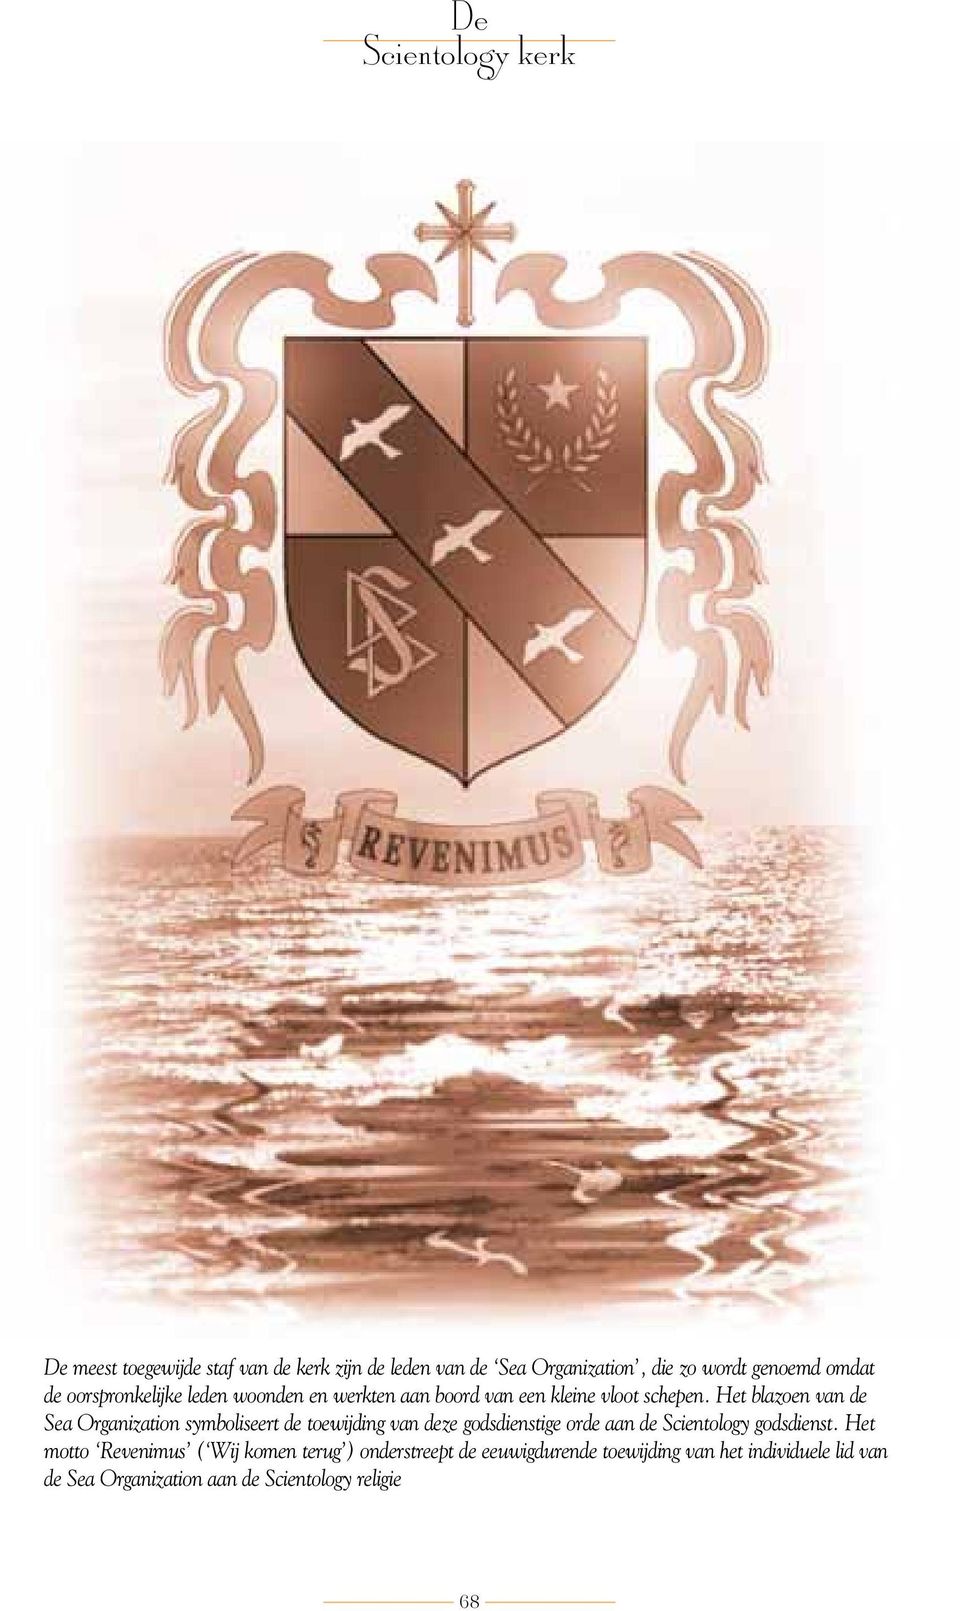 Het blazoen van de Sea Organization symboliseert de toewijding van deze godsdienstige orde aan de Scientology godsdienst.